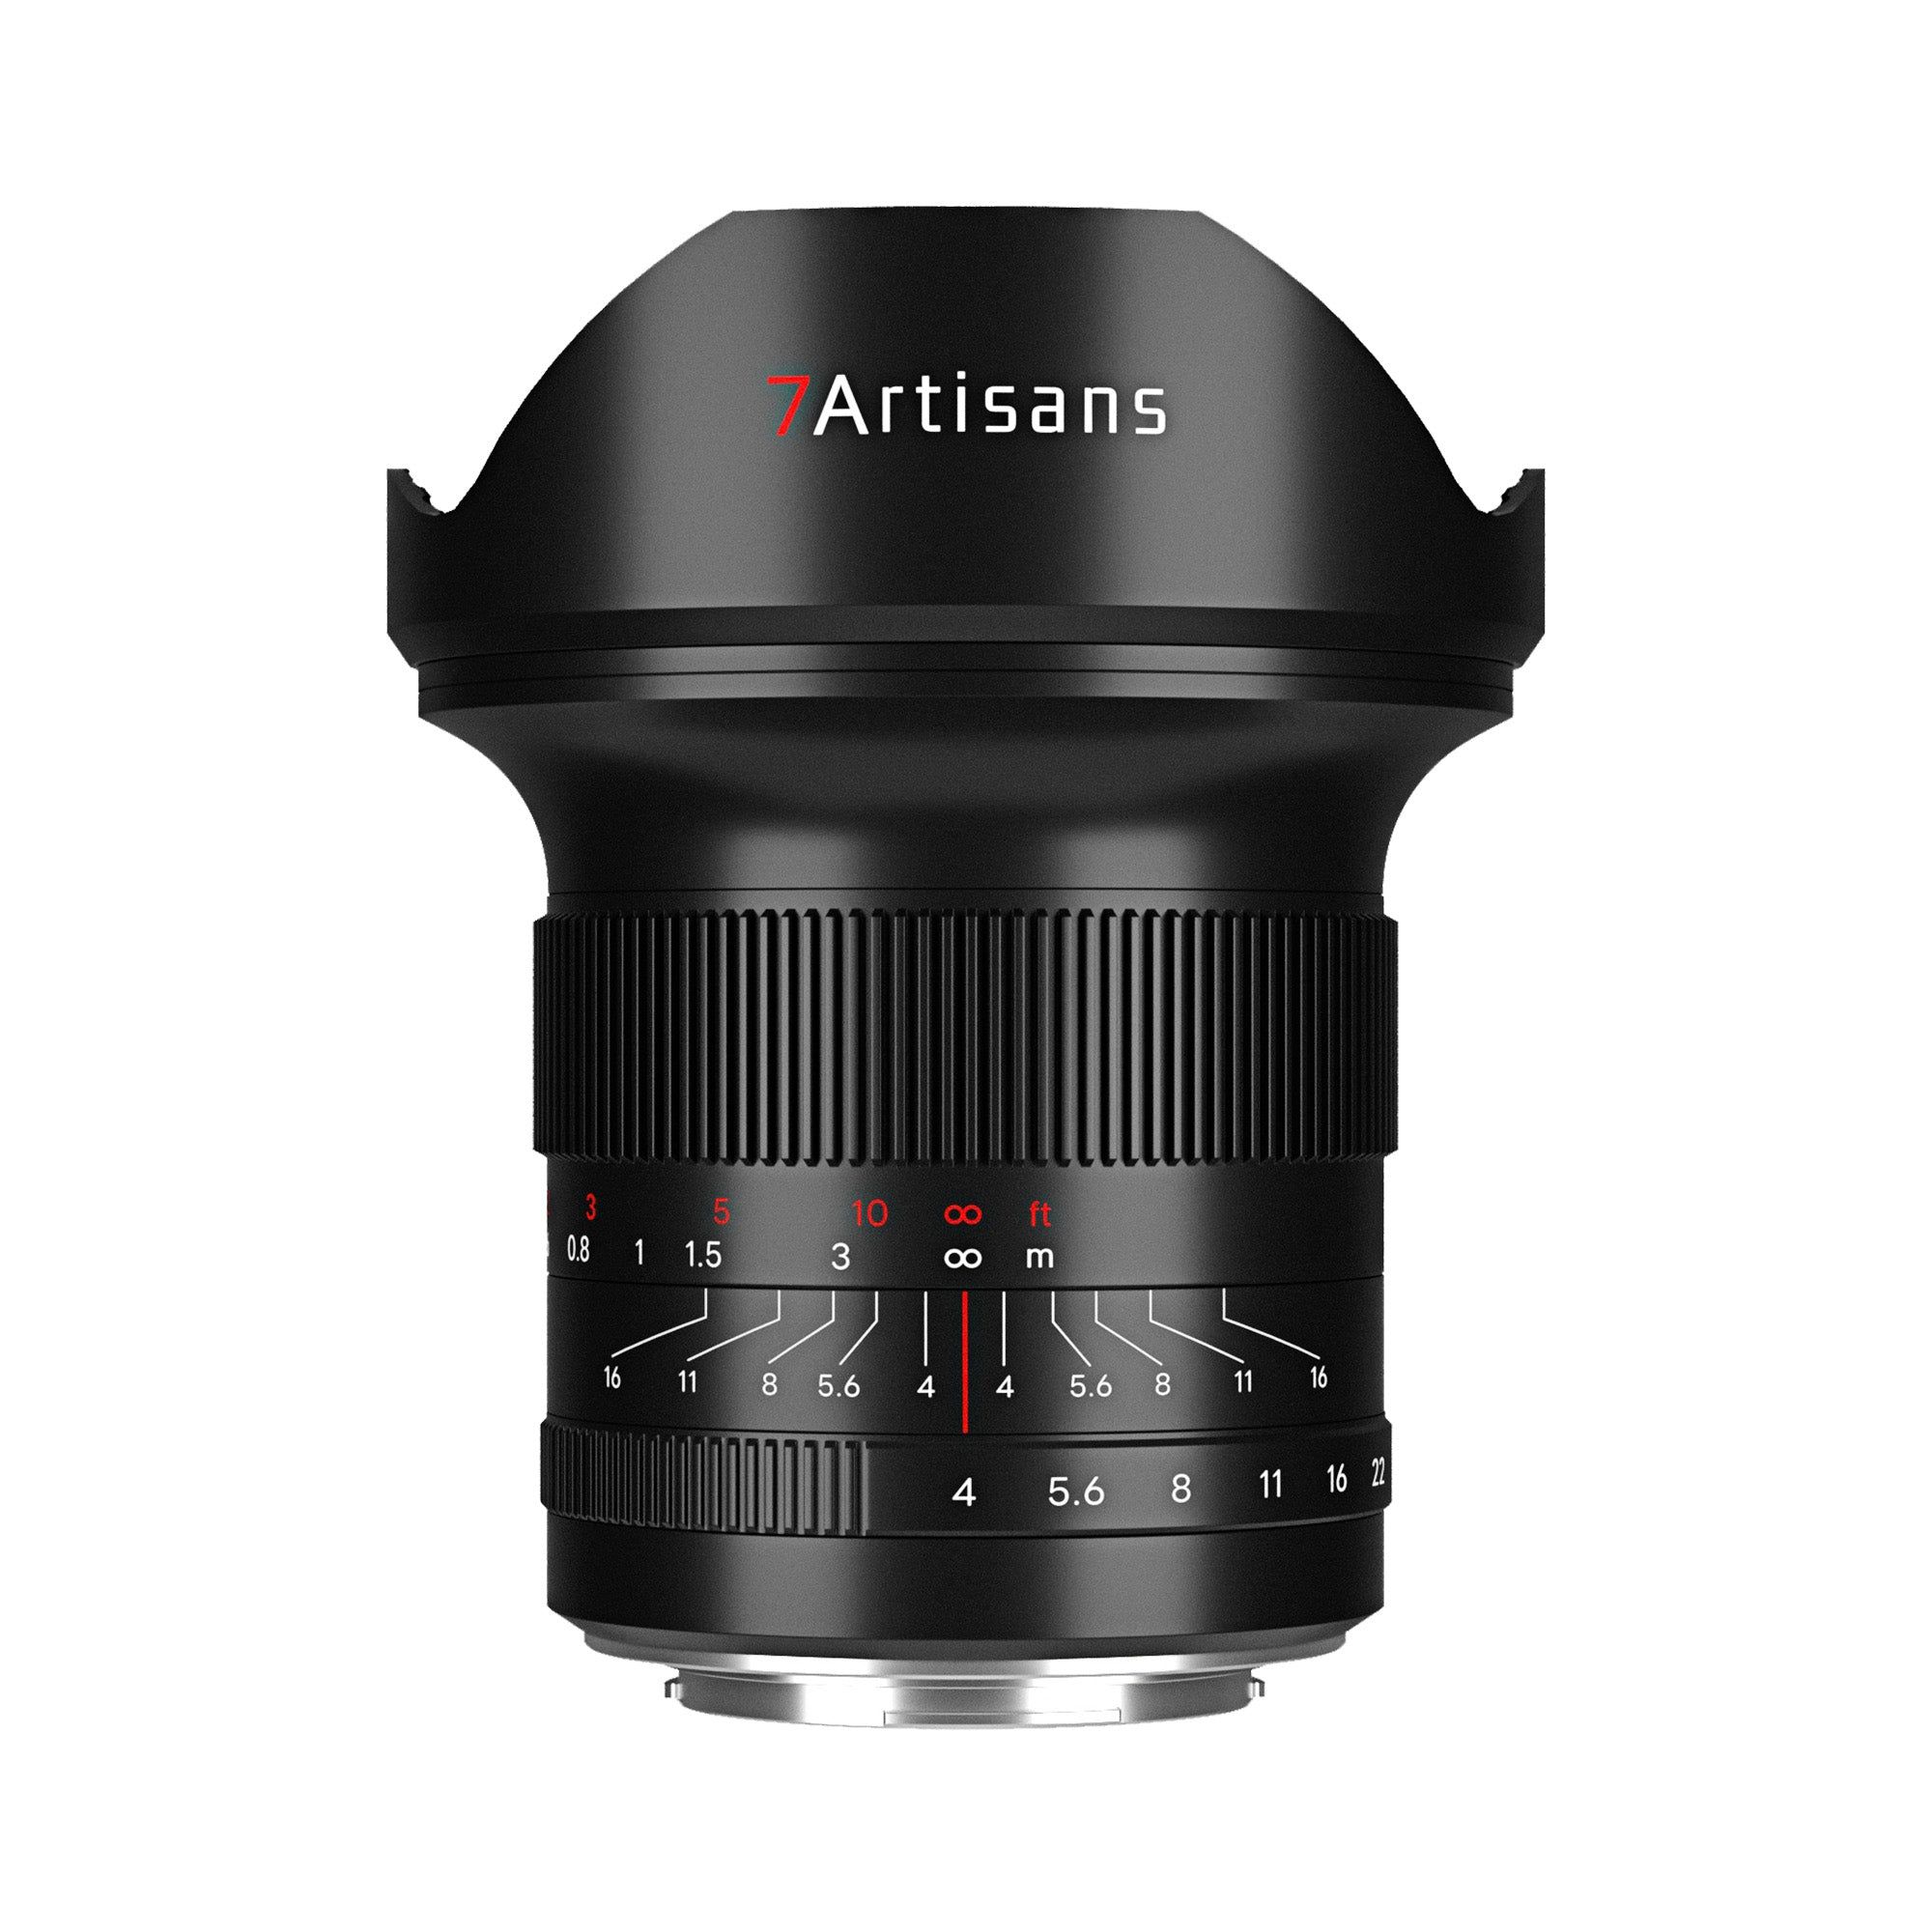 7artisans 15mm f/4 Full-frame Lens for Canon RF